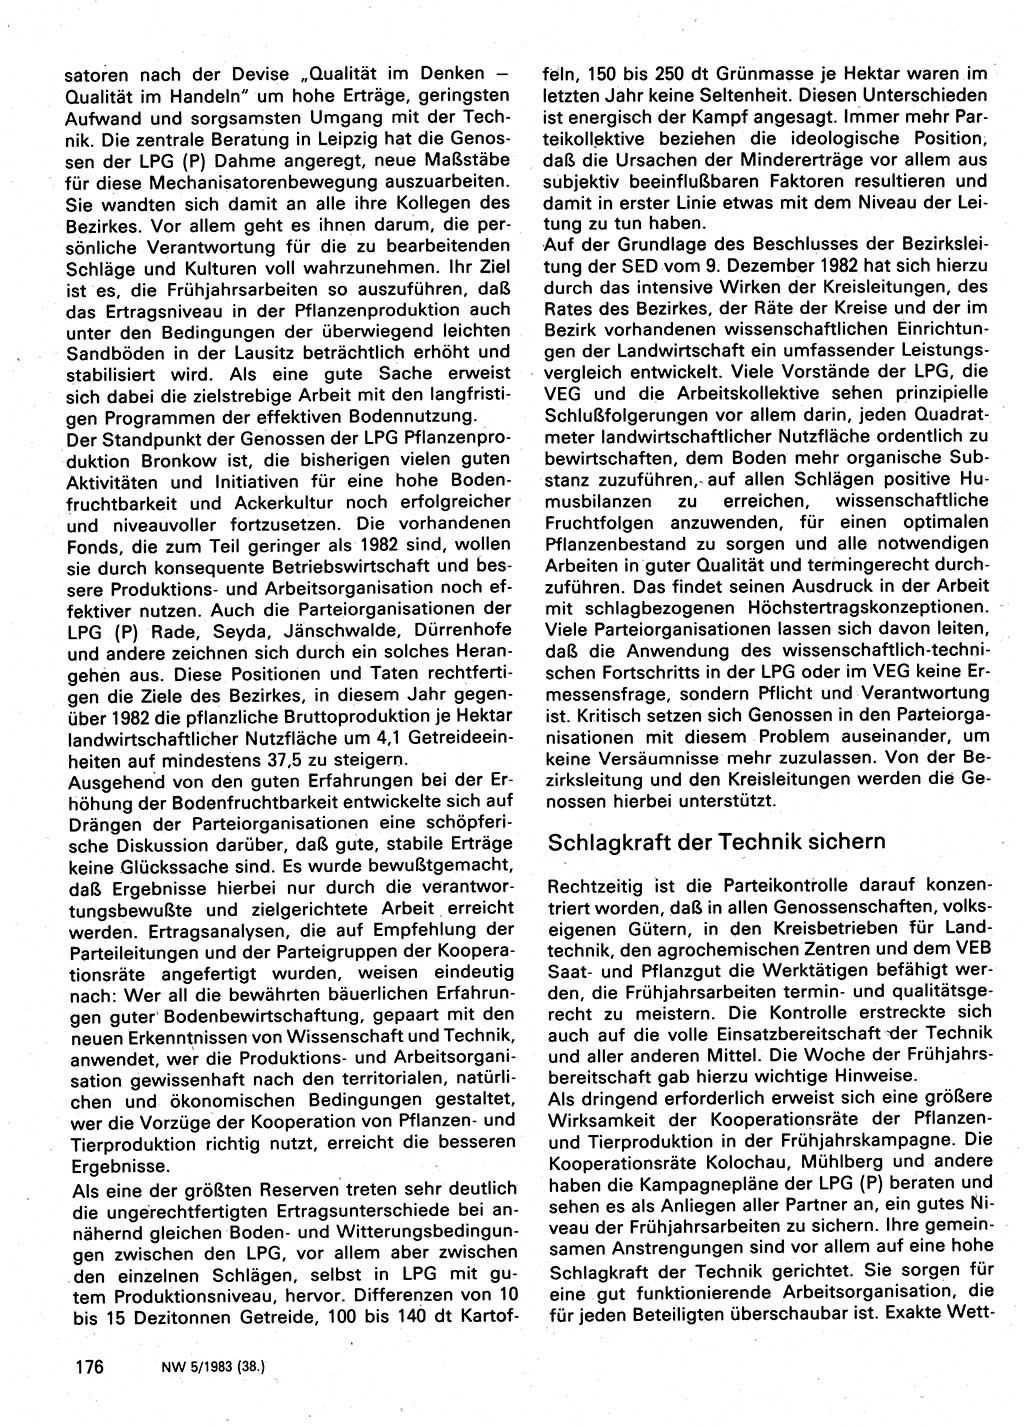 Neuer Weg (NW), Organ des Zentralkomitees (ZK) der SED (Sozialistische Einheitspartei Deutschlands) für Fragen des Parteilebens, 38. Jahrgang [Deutsche Demokratische Republik (DDR)] 1983, Seite 176 (NW ZK SED DDR 1983, S. 176)